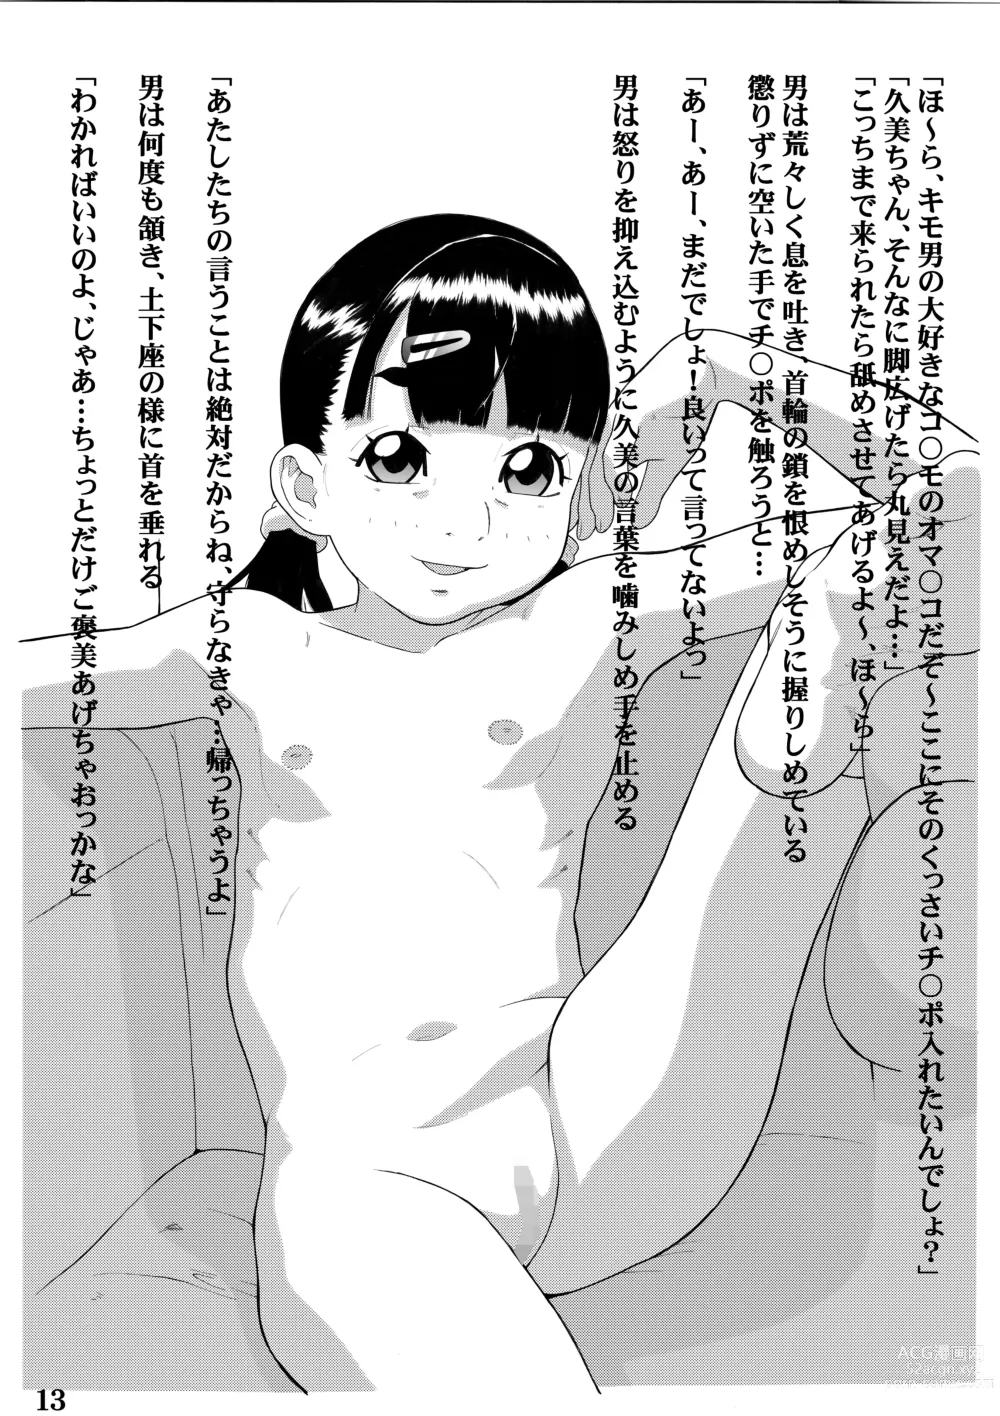 Page 16 of doujinshi Kikenna arubaito